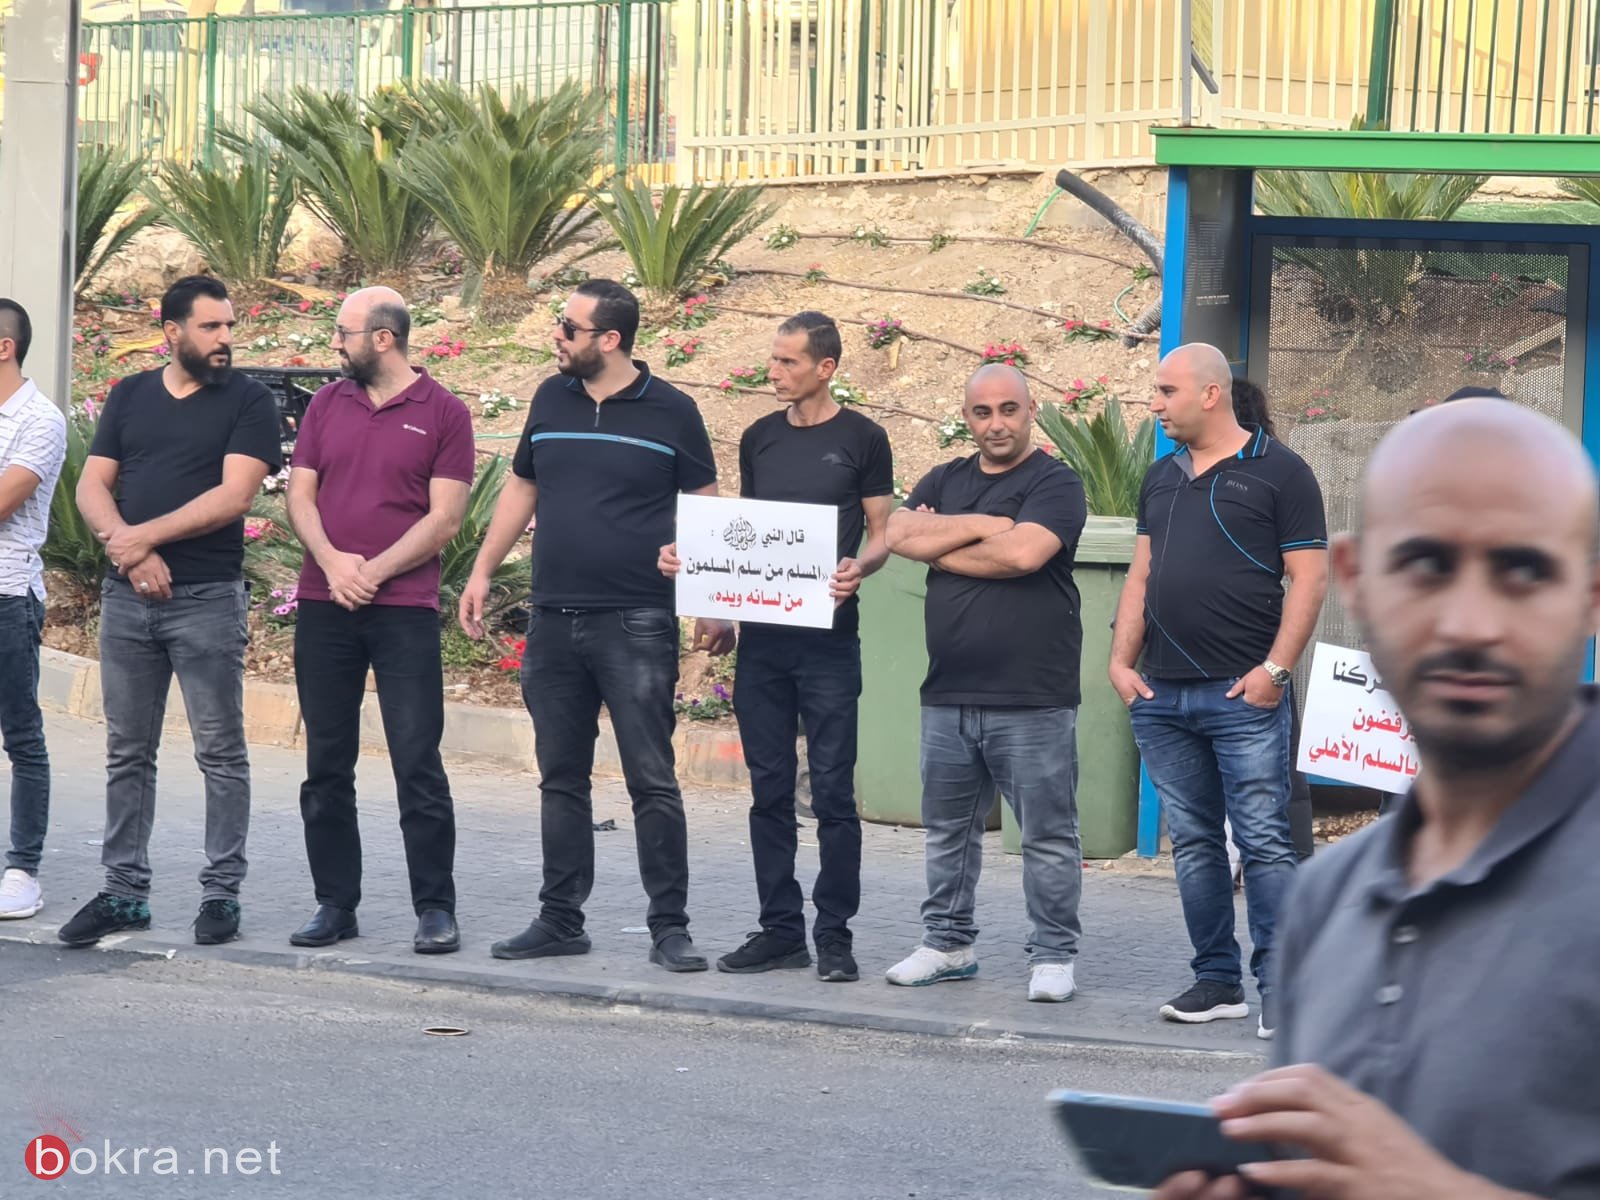 كفركنا: وقفة احتجاجية في منطقة العين منعا للمساس بالسلم الأهلي.-6